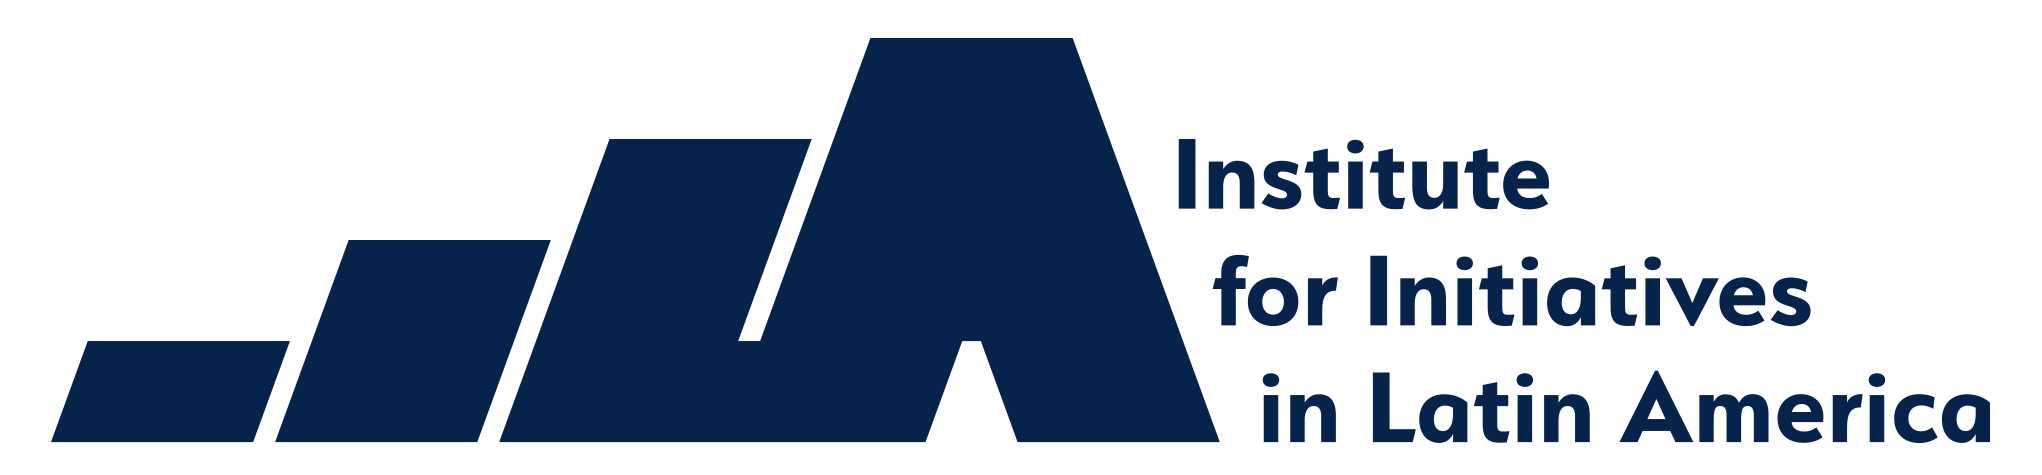 IILA Logo English